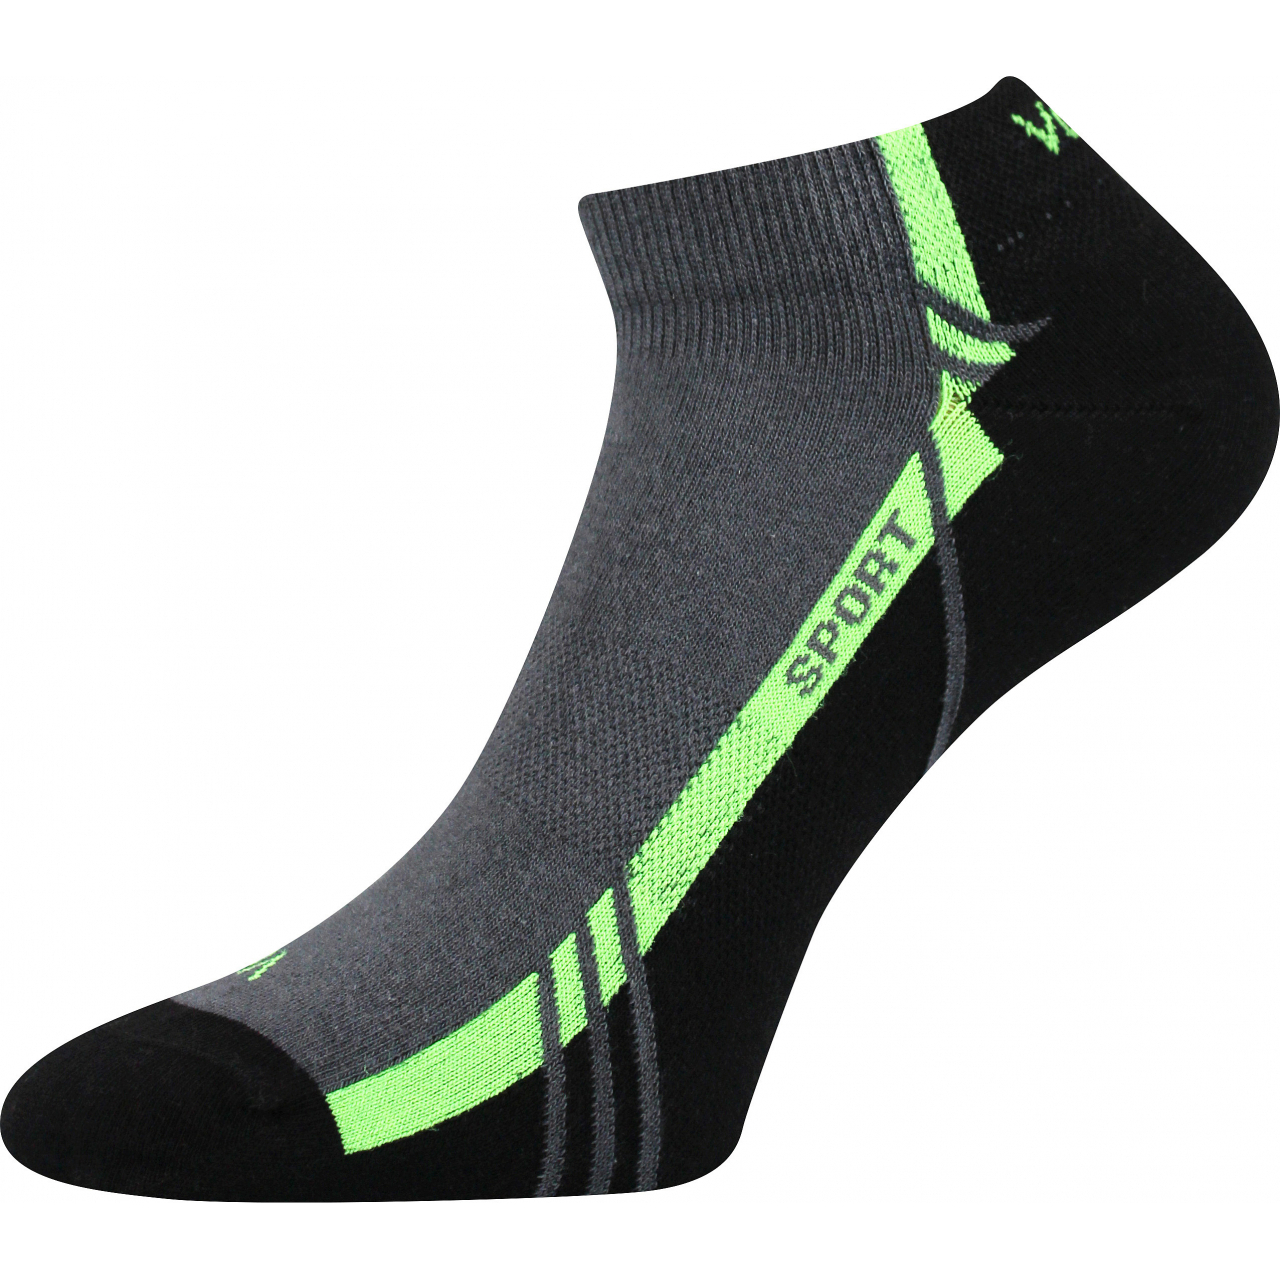 Ponožky unisex sportovní Voxx Pinas - tmavě šedé-zelené, 39-42